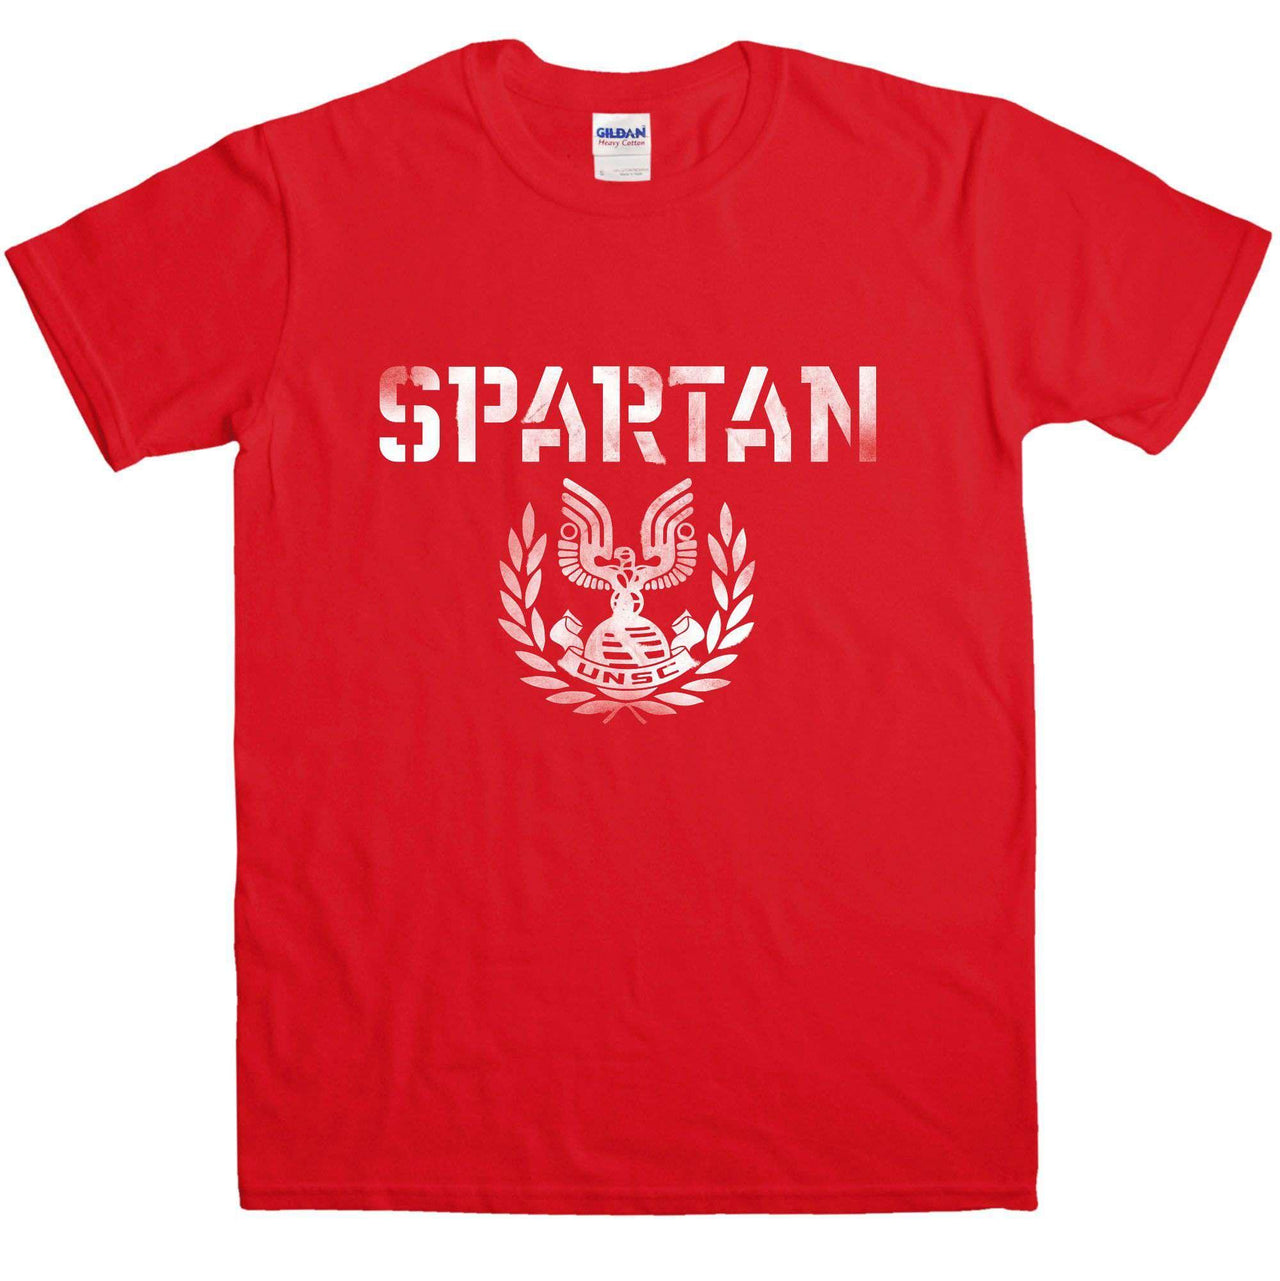 Spartan Mens Graphic T-Shirt 8Ball